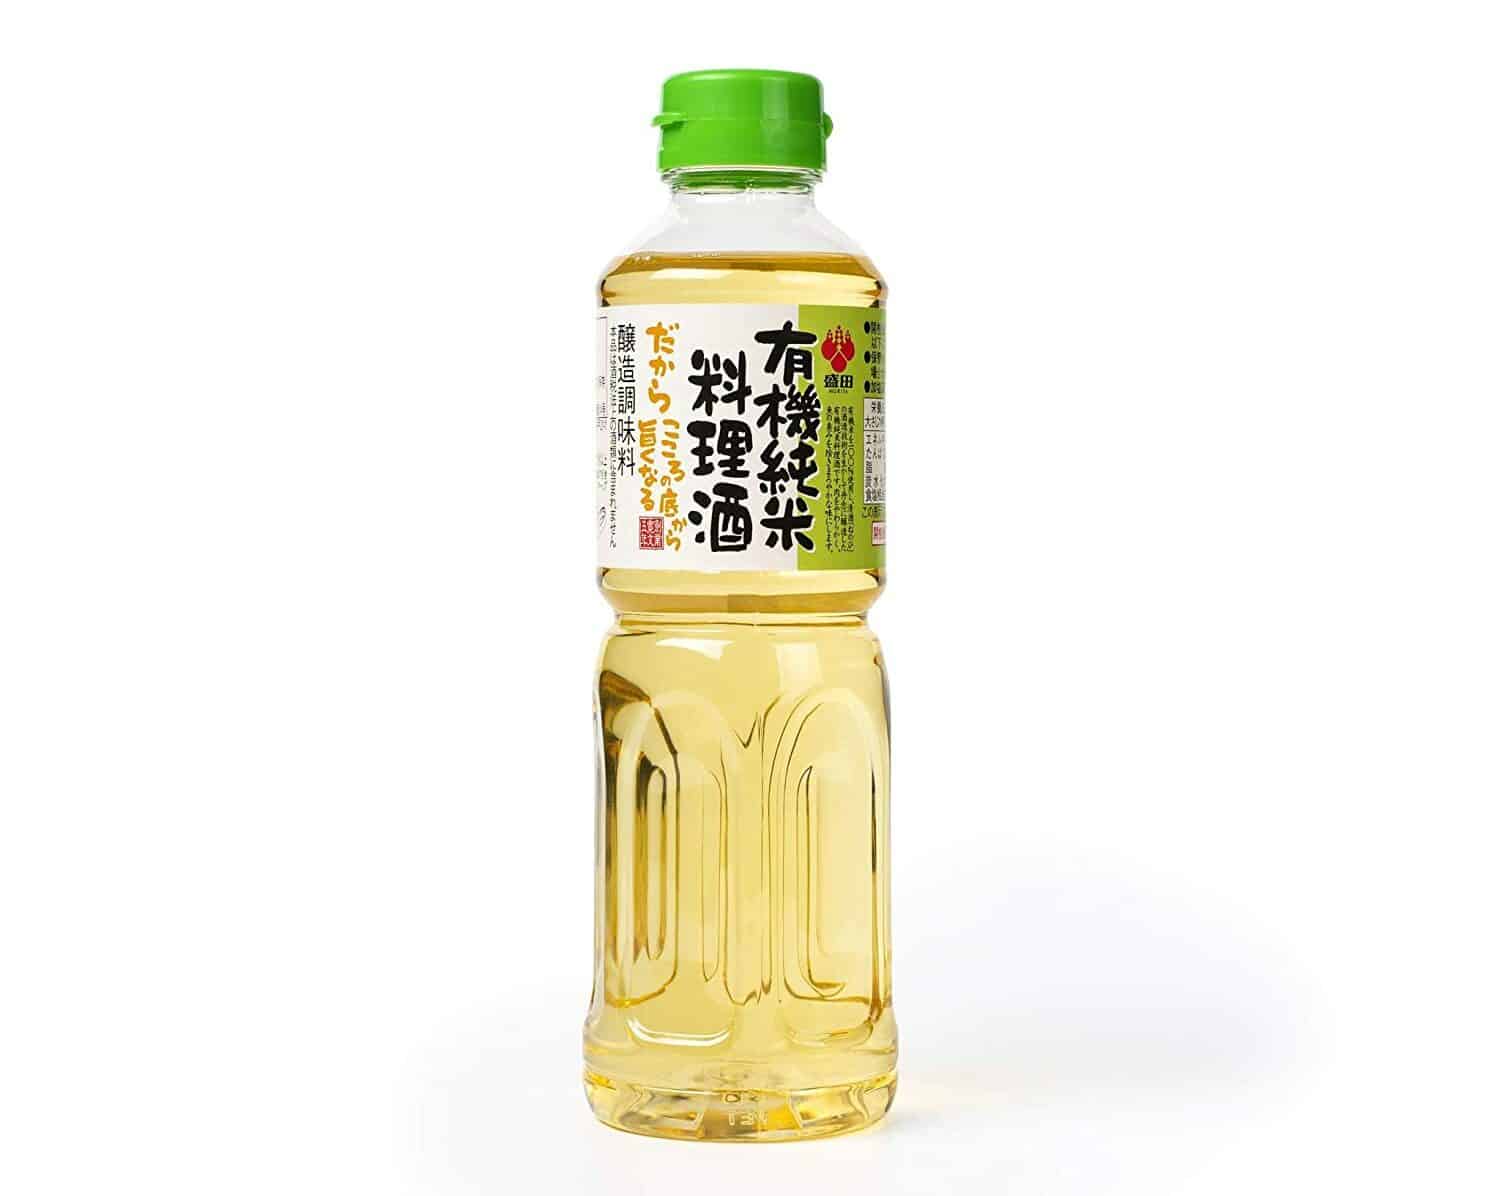 Il miglior sake da cucina biologico: Morita Premium Organic Cooking Sake